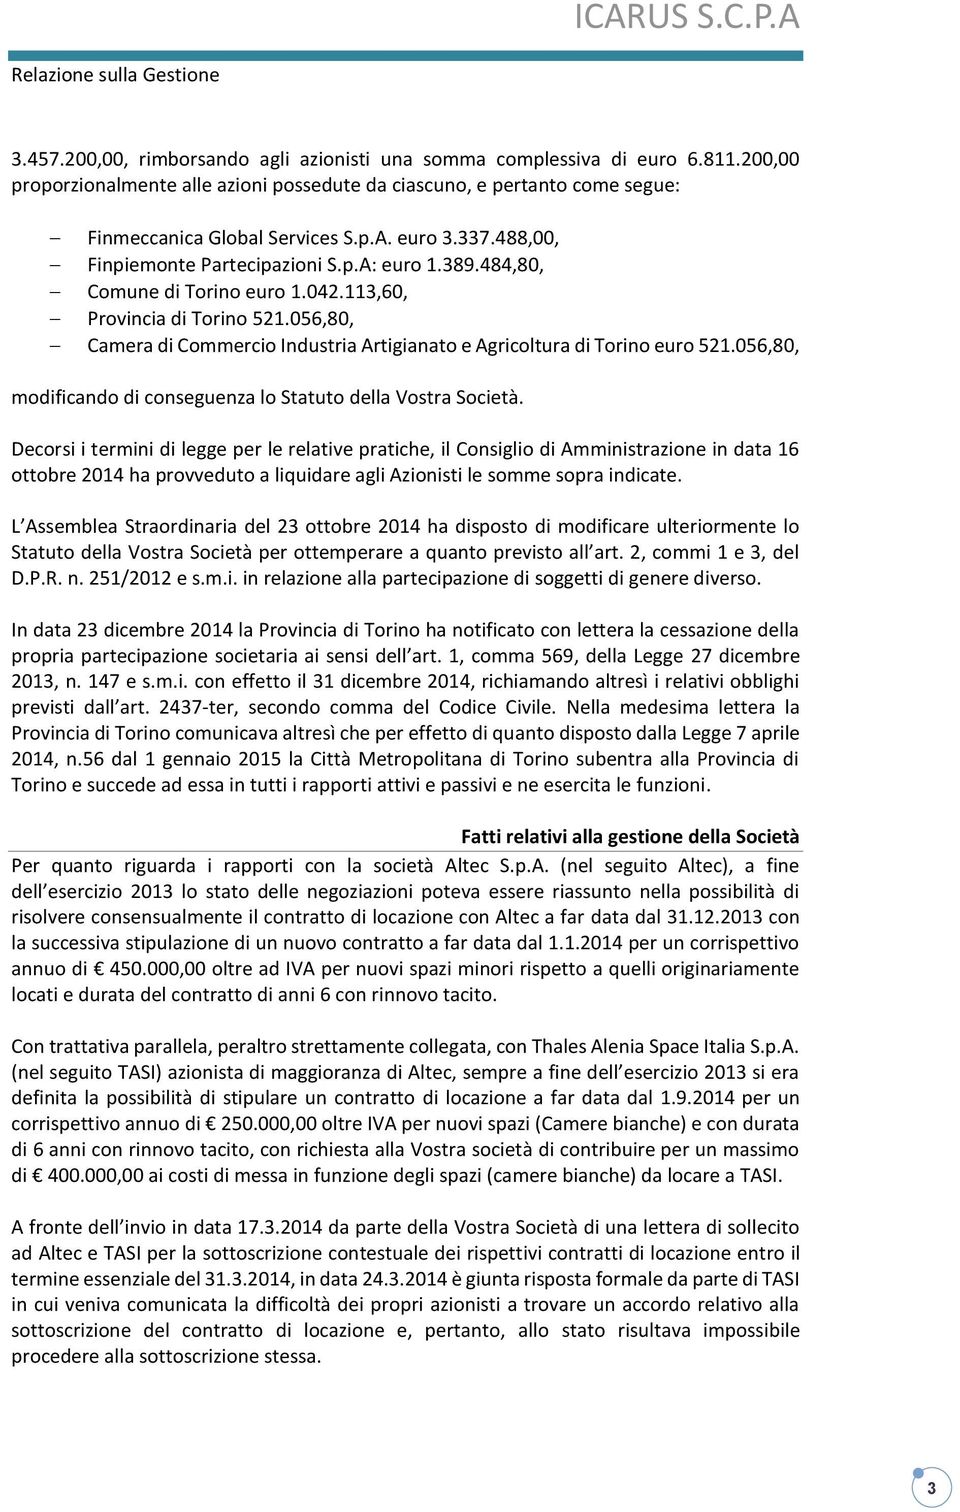 056,80, Camera di Commercio Industria Artigianato e Agricoltura di Torino euro 521.056,80, modificando di conseguenza lo Statuto della Vostra Società.